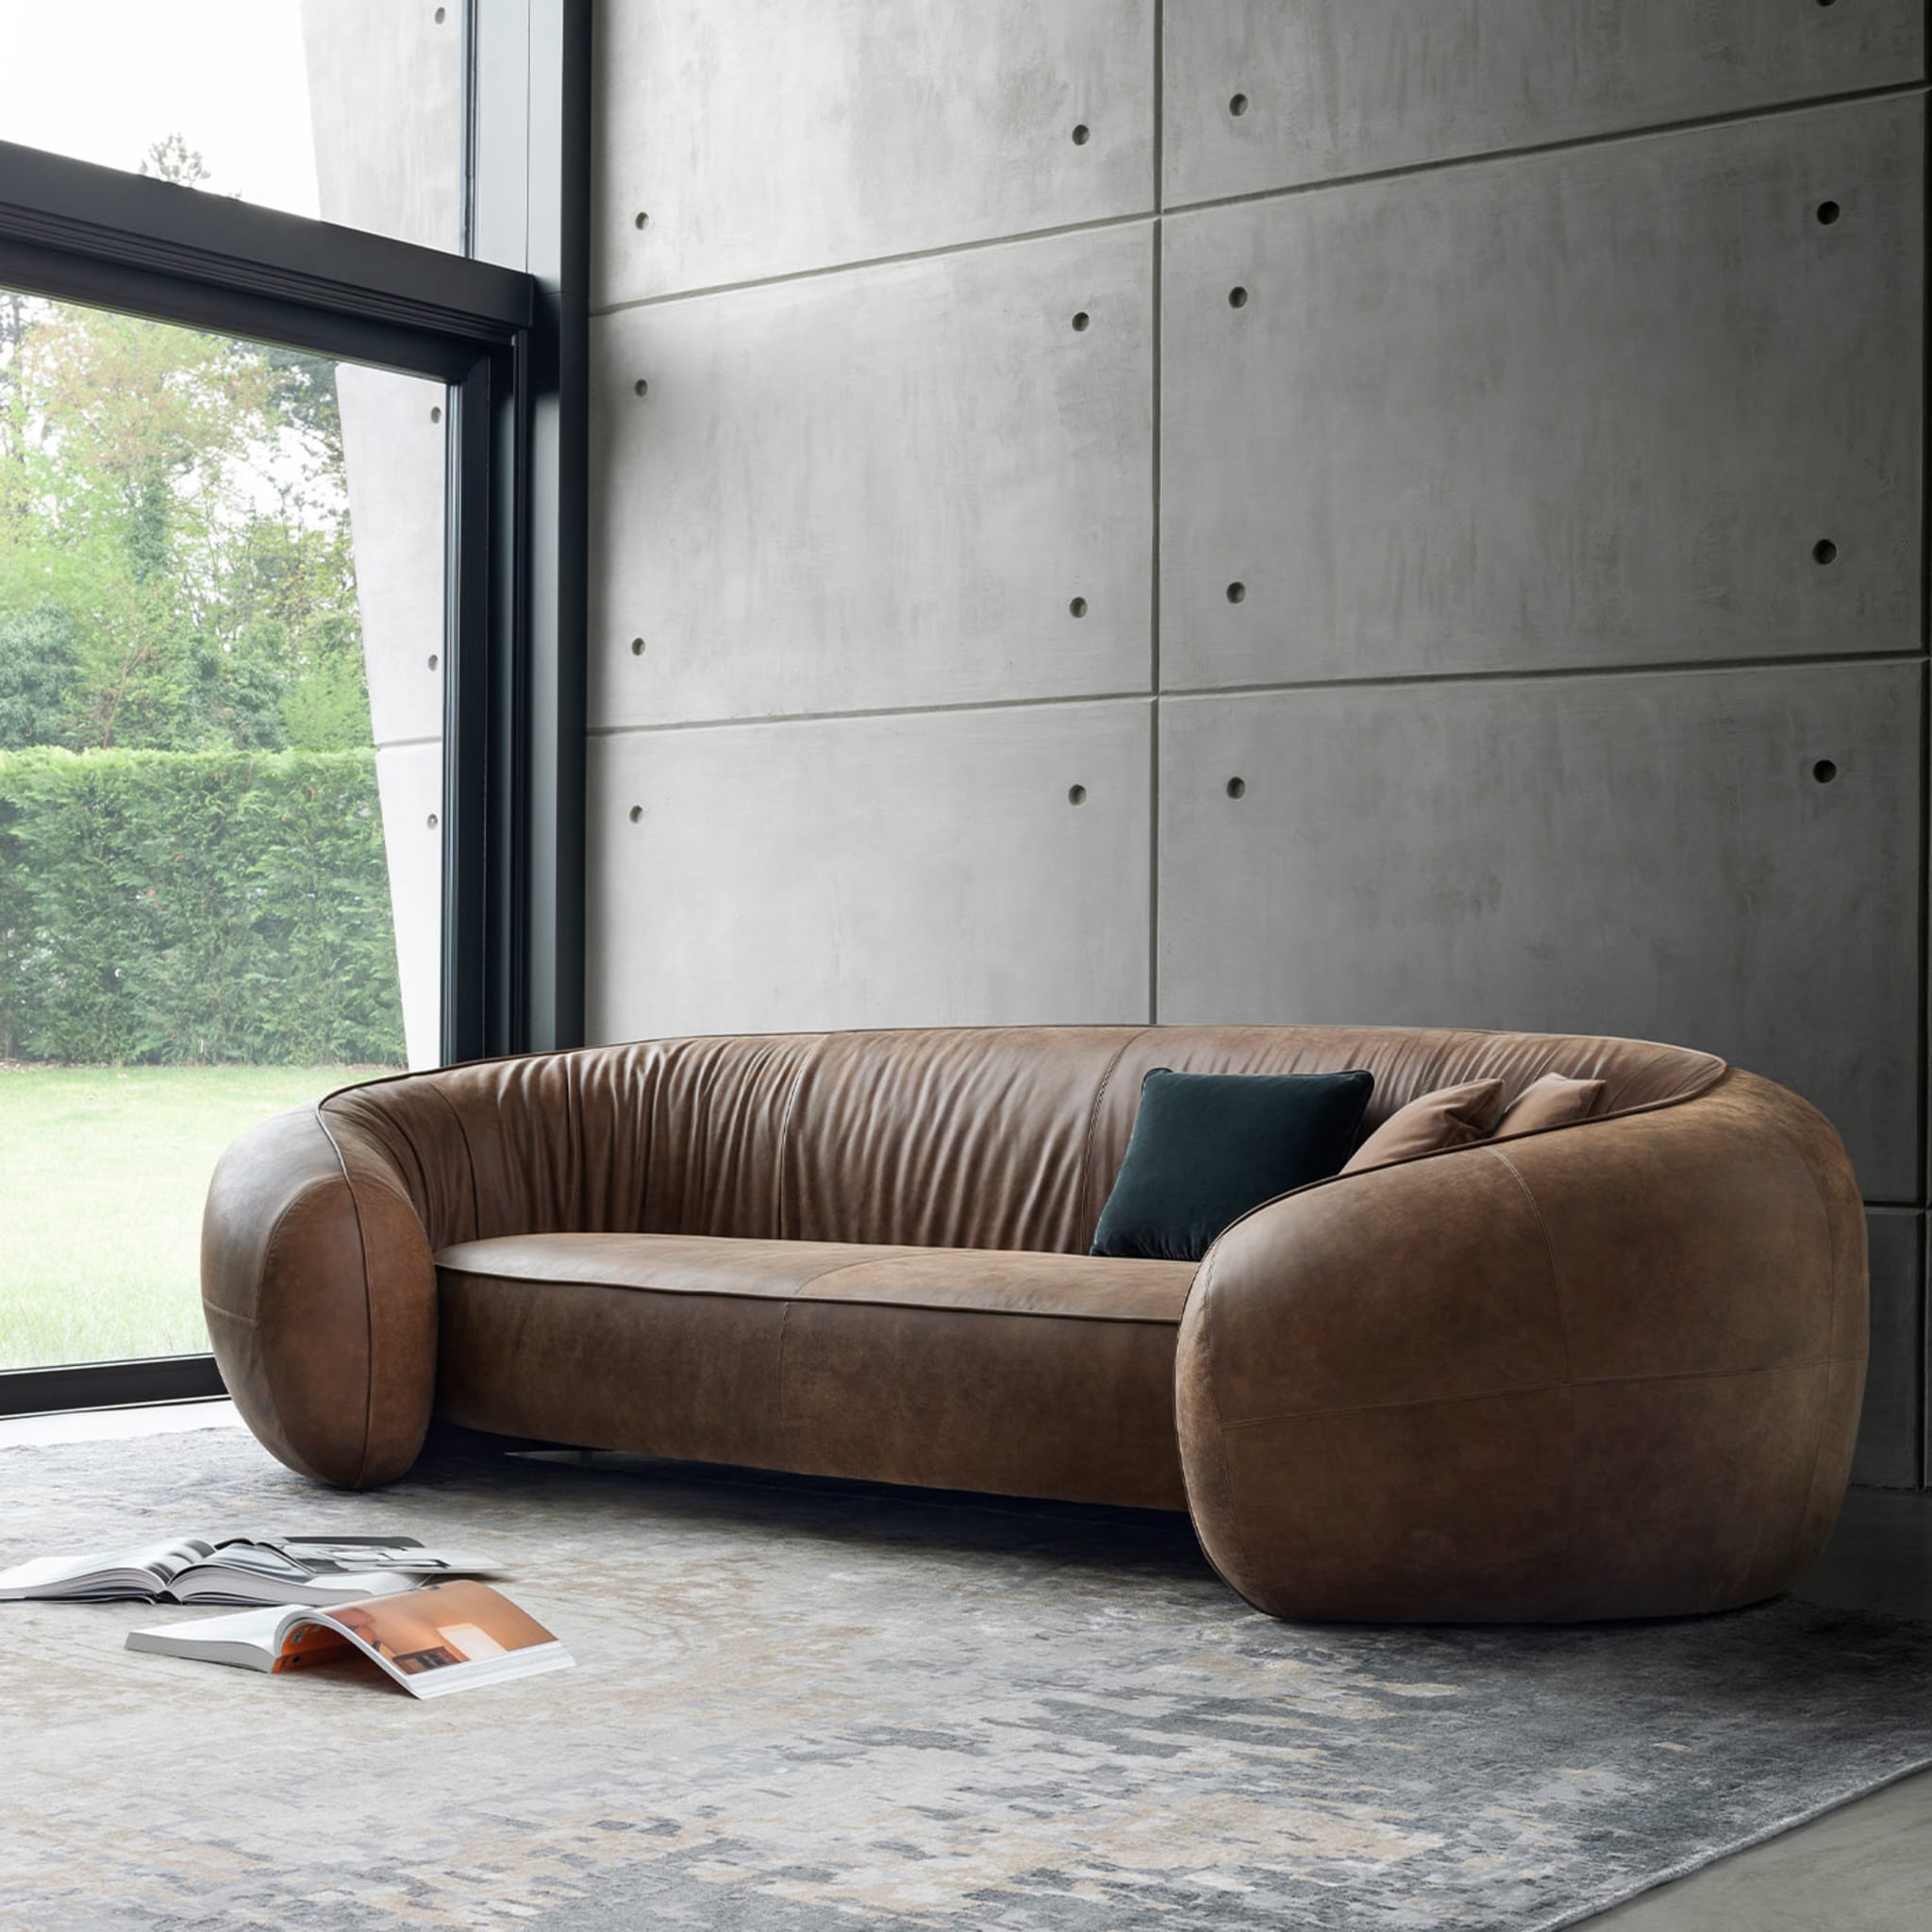 Bridge 3-Seater Brown Sofa by Stefano Giovannoni - Alternative view 4